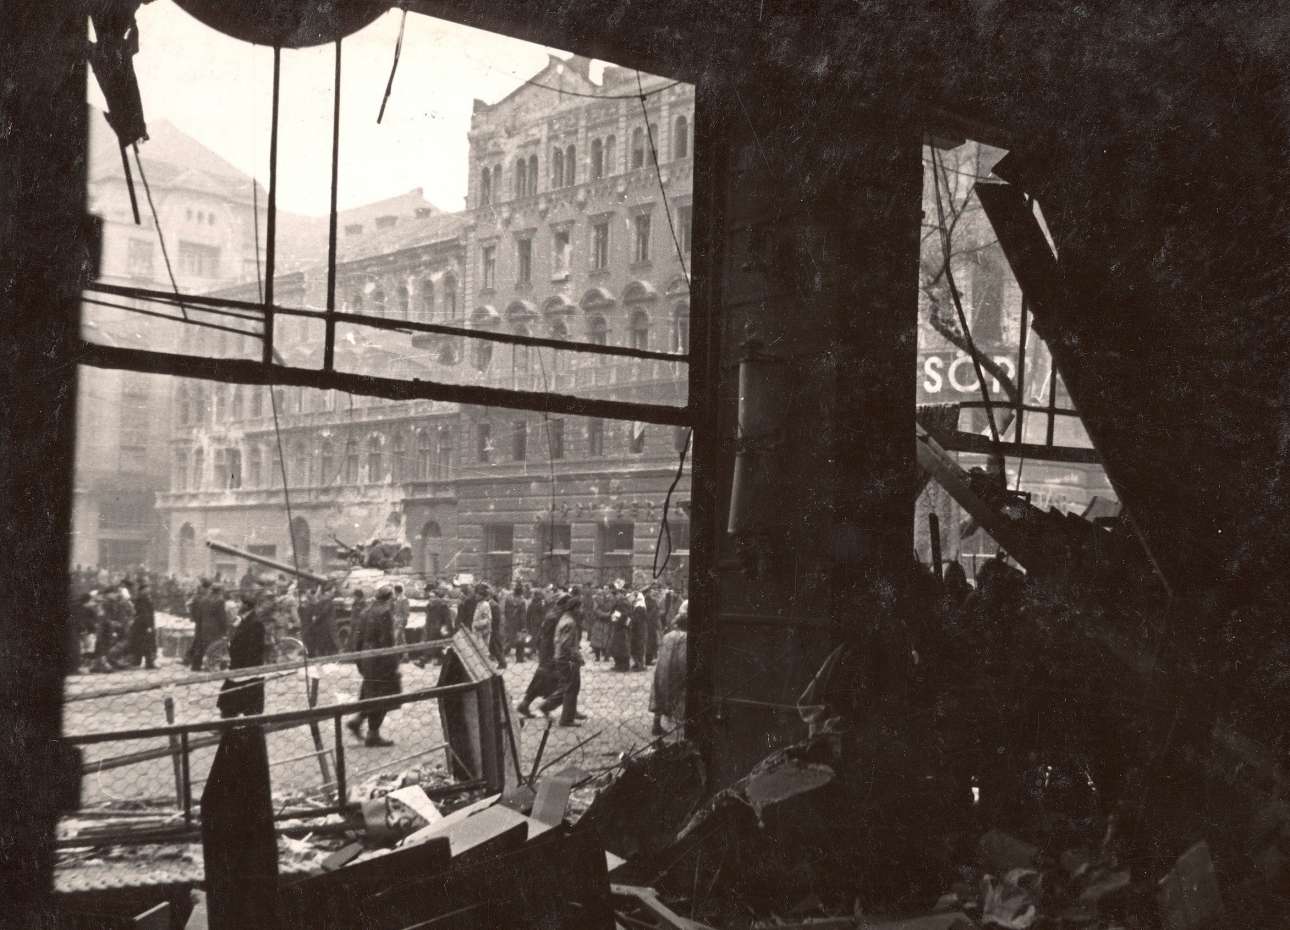 Διαλυμένα καταστήματα και κόσμος στους δρόμους. Το σκηνικό των πρώτων ημερών της εξέγερσης. Στις 4 Νοεμβρίου 1956 μια τεράστια δύναμη 17 σοβιετικών μεραρχιών πεζικού και τεθωρακισμένων περικύκλωσε τη Βουδαπέστη καταπνίγοντας την εξέγερση